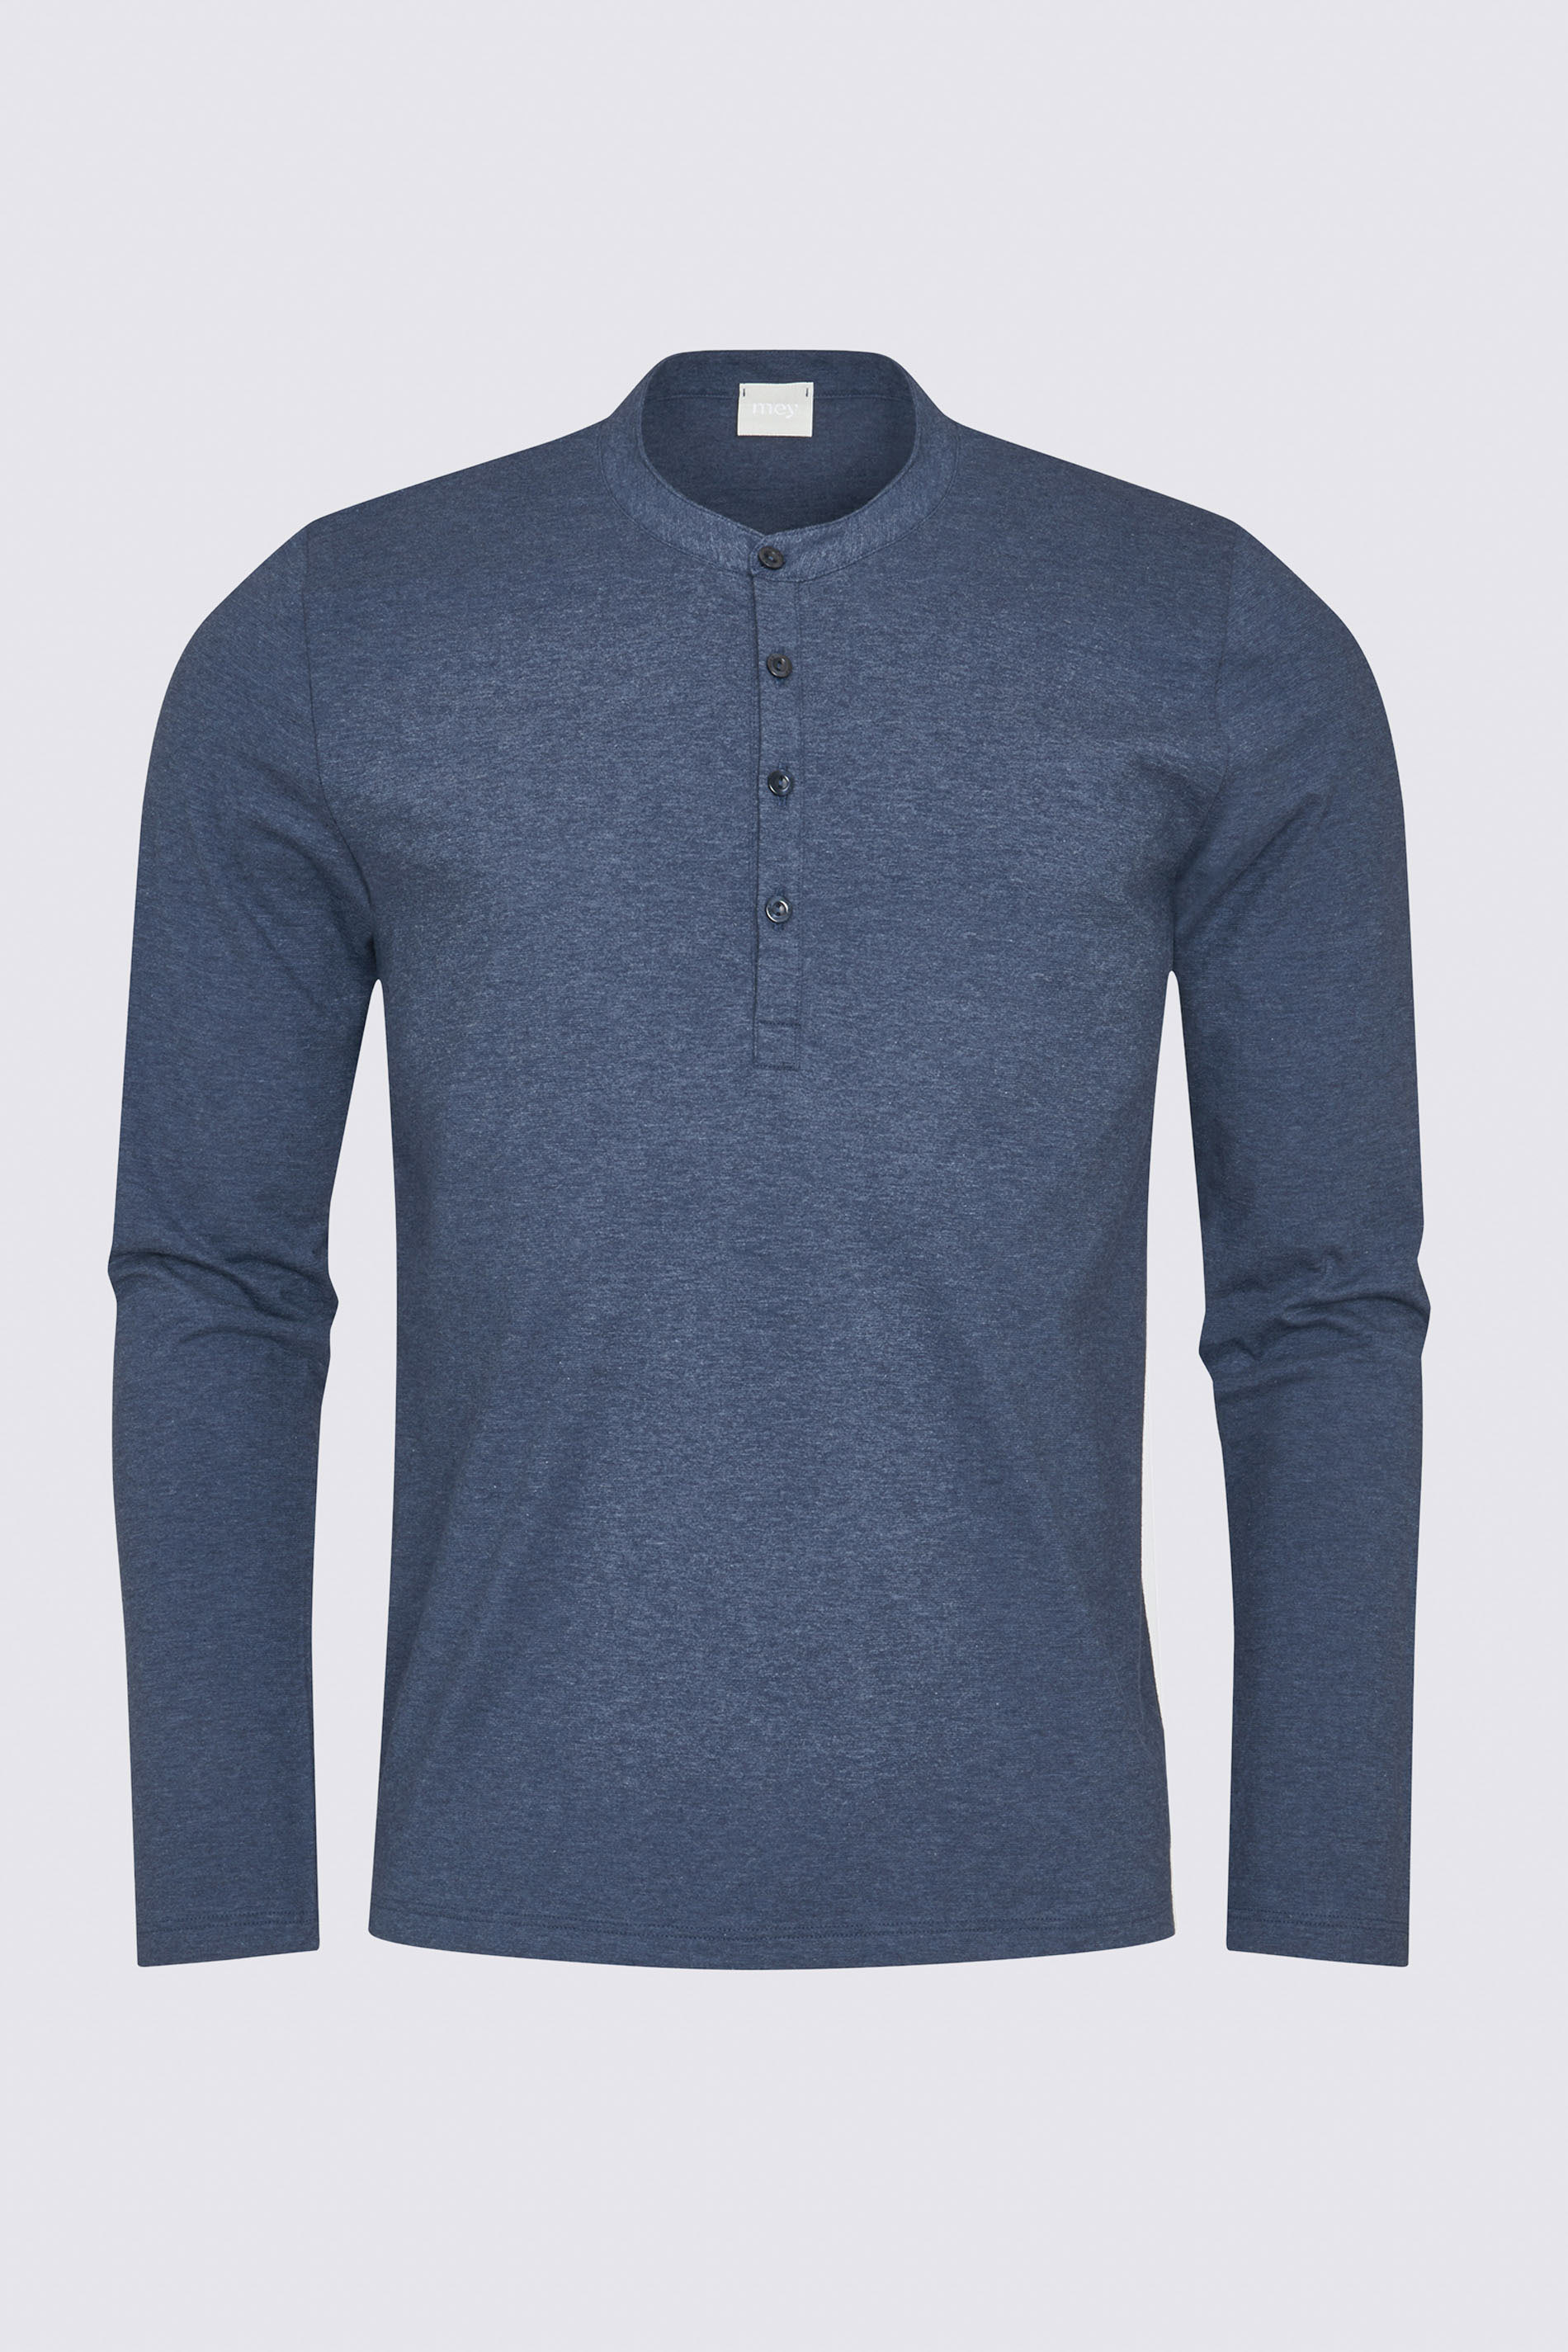 Langarm-Shirt Denim Blue Serie Ringwood Colour Freisteller | mey®